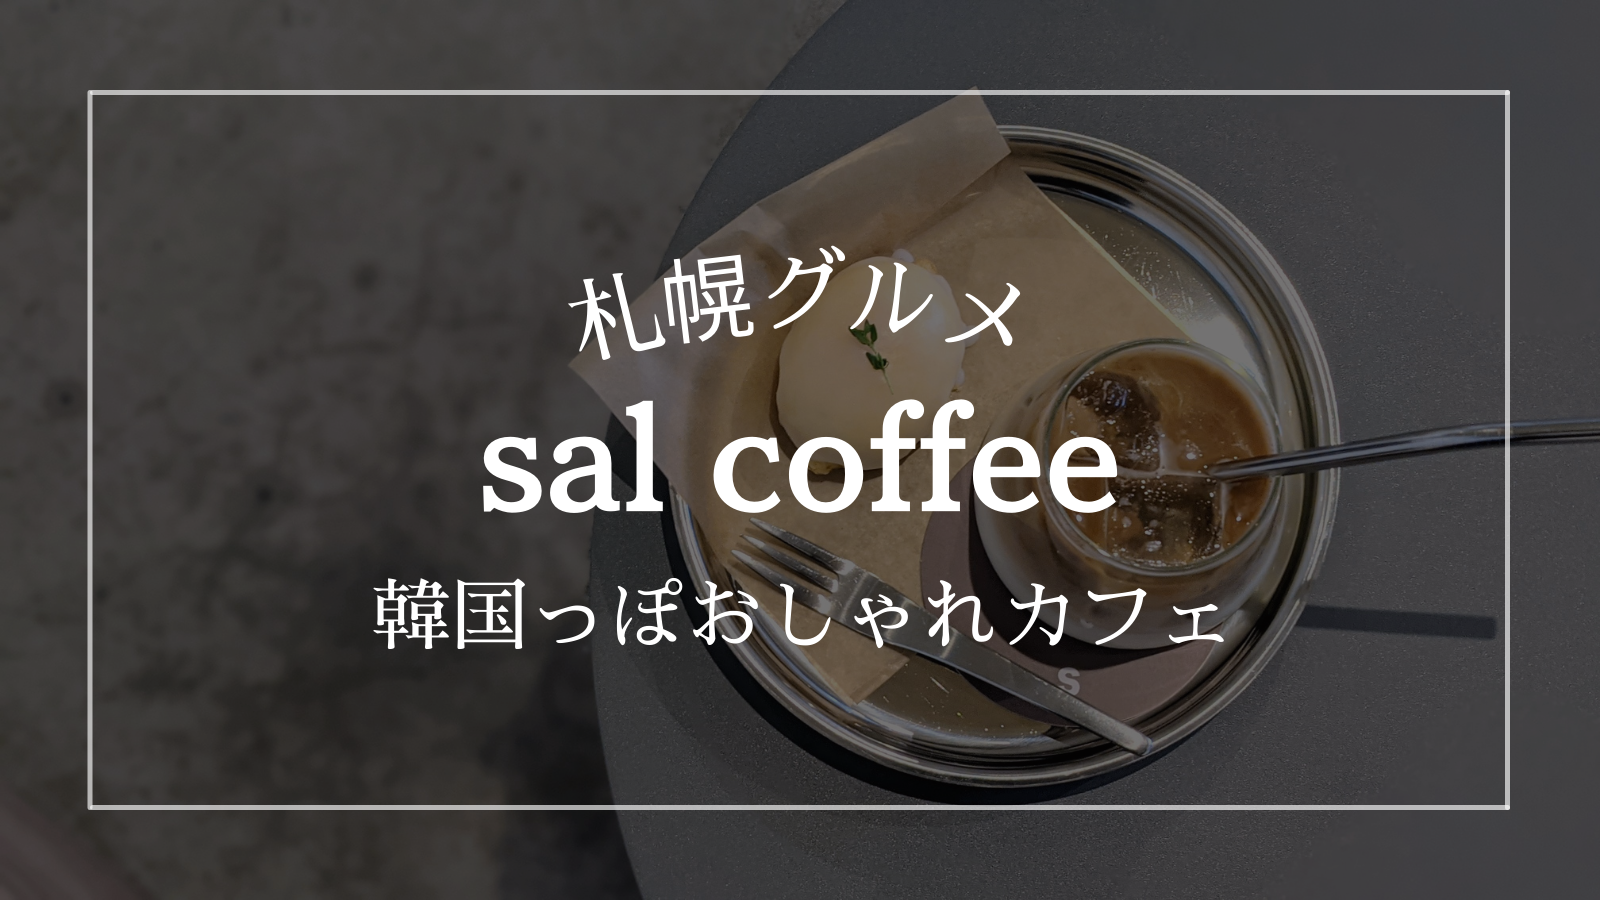 salcoffee サルコーヒー 札幌